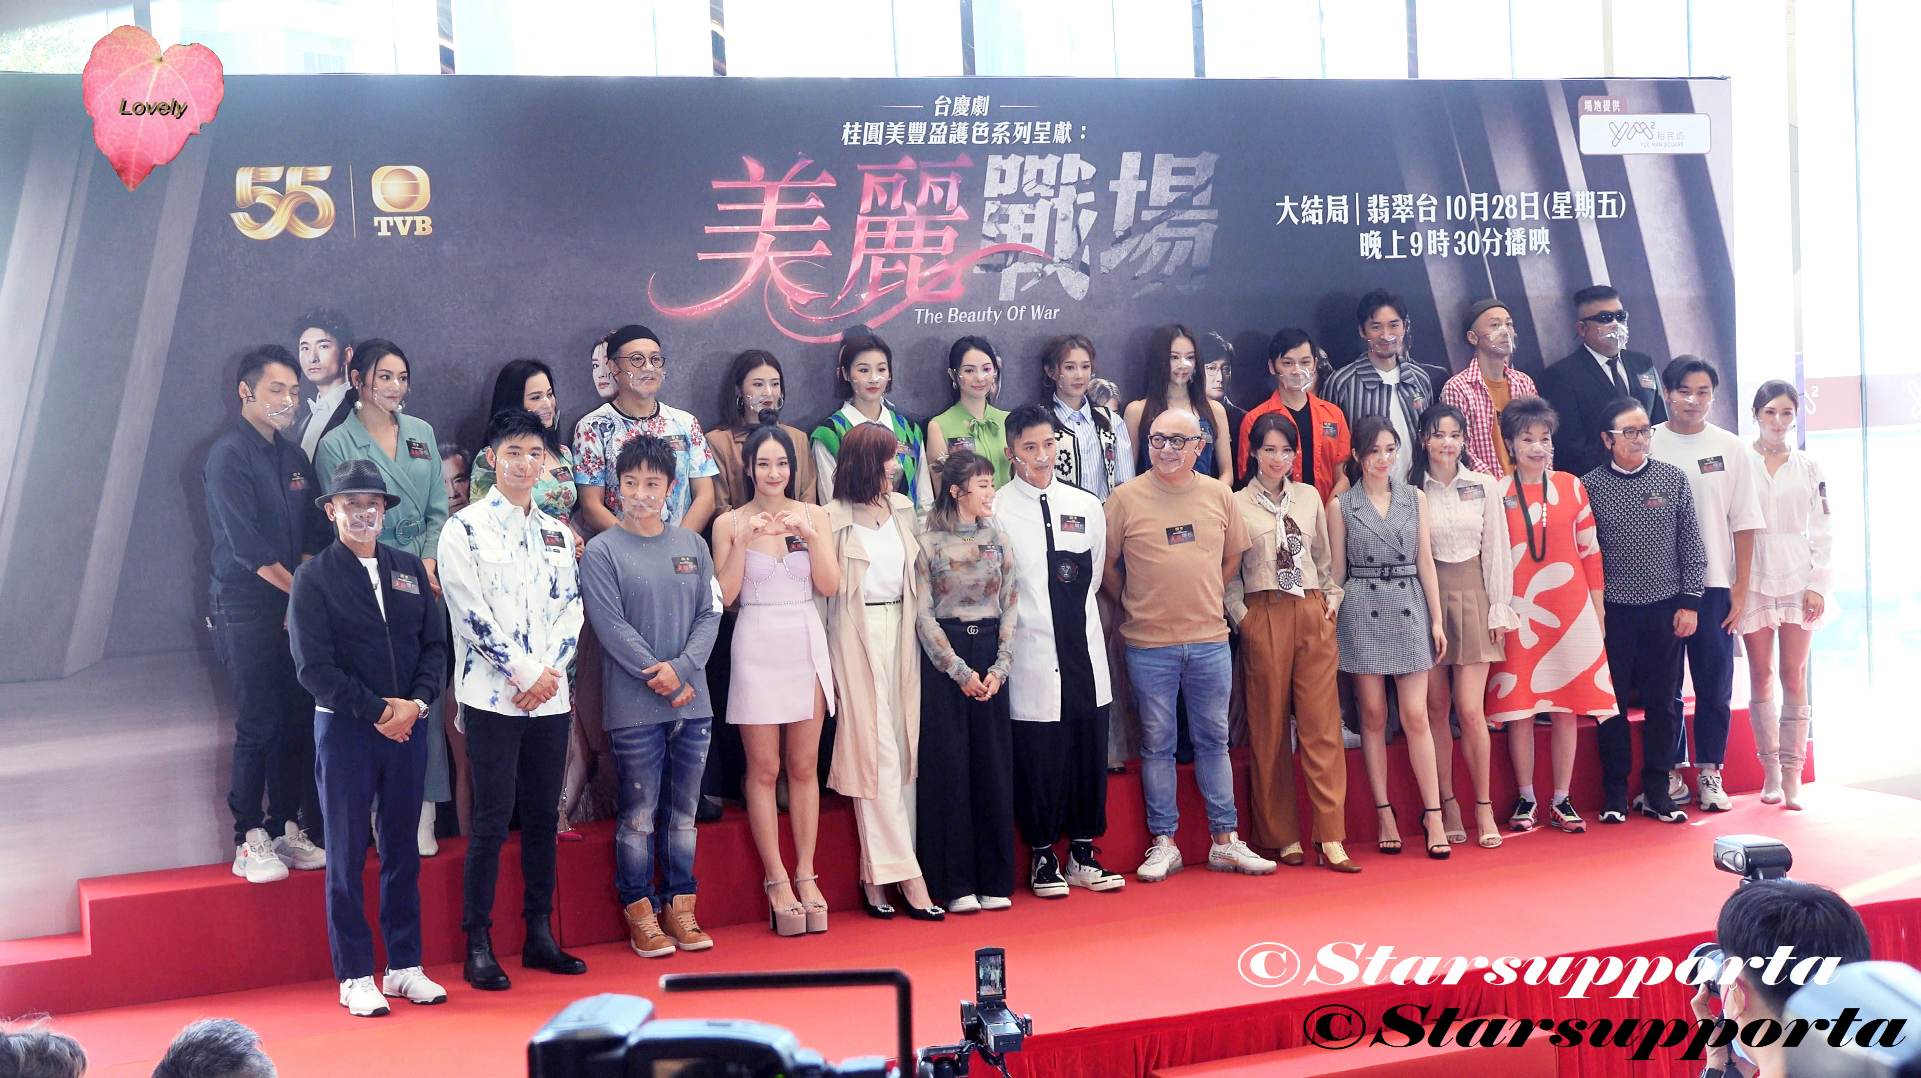 20221025 台慶劇《美麗戰場》「愈美麗愈頑強」 @ 香港觀塘裕民坊